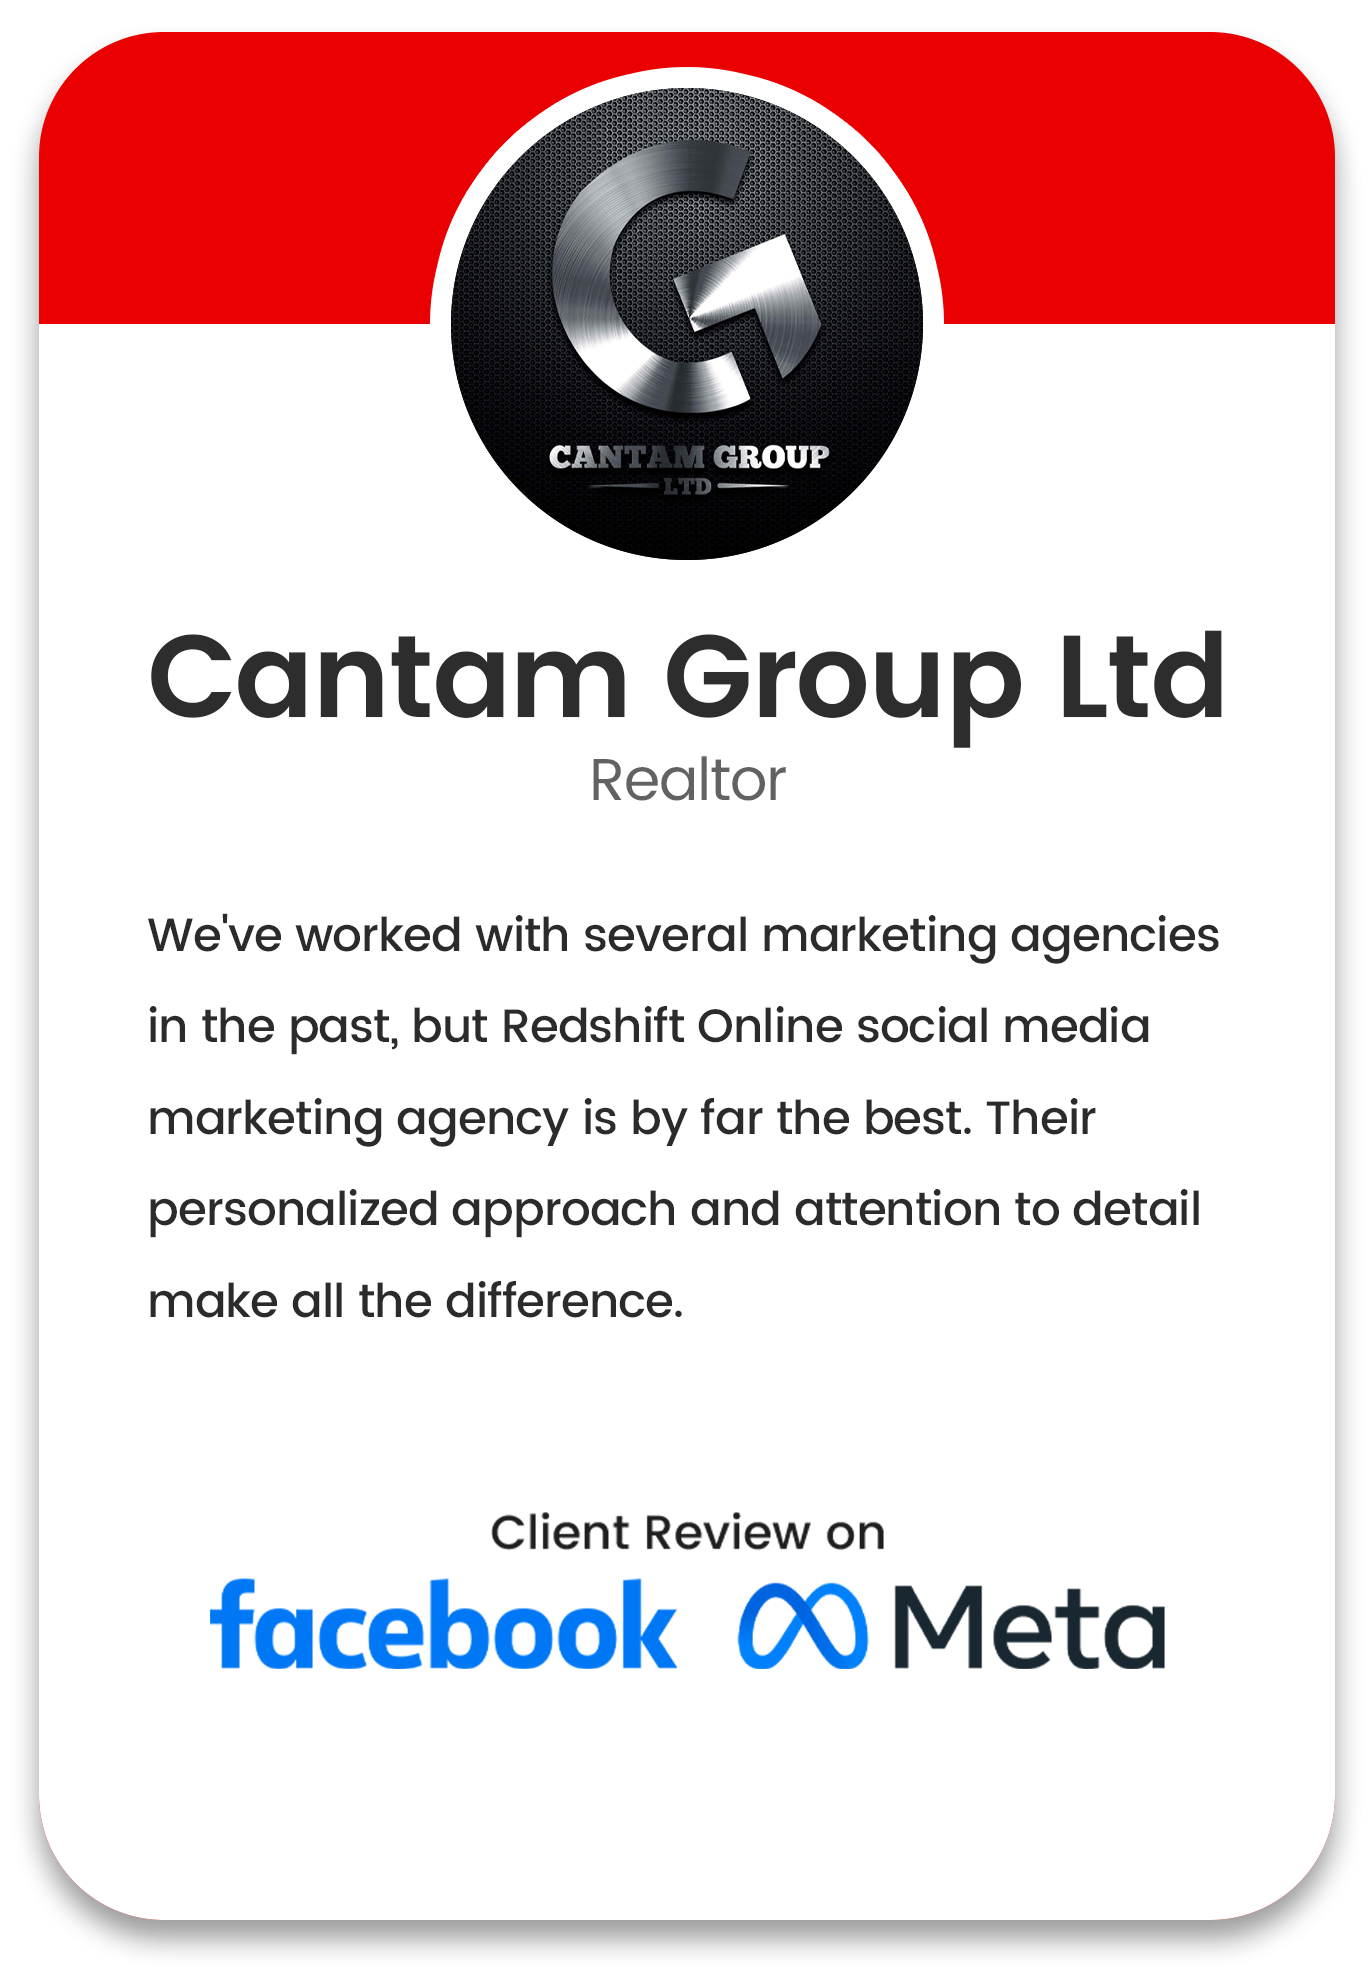 Cantam Group Ltd